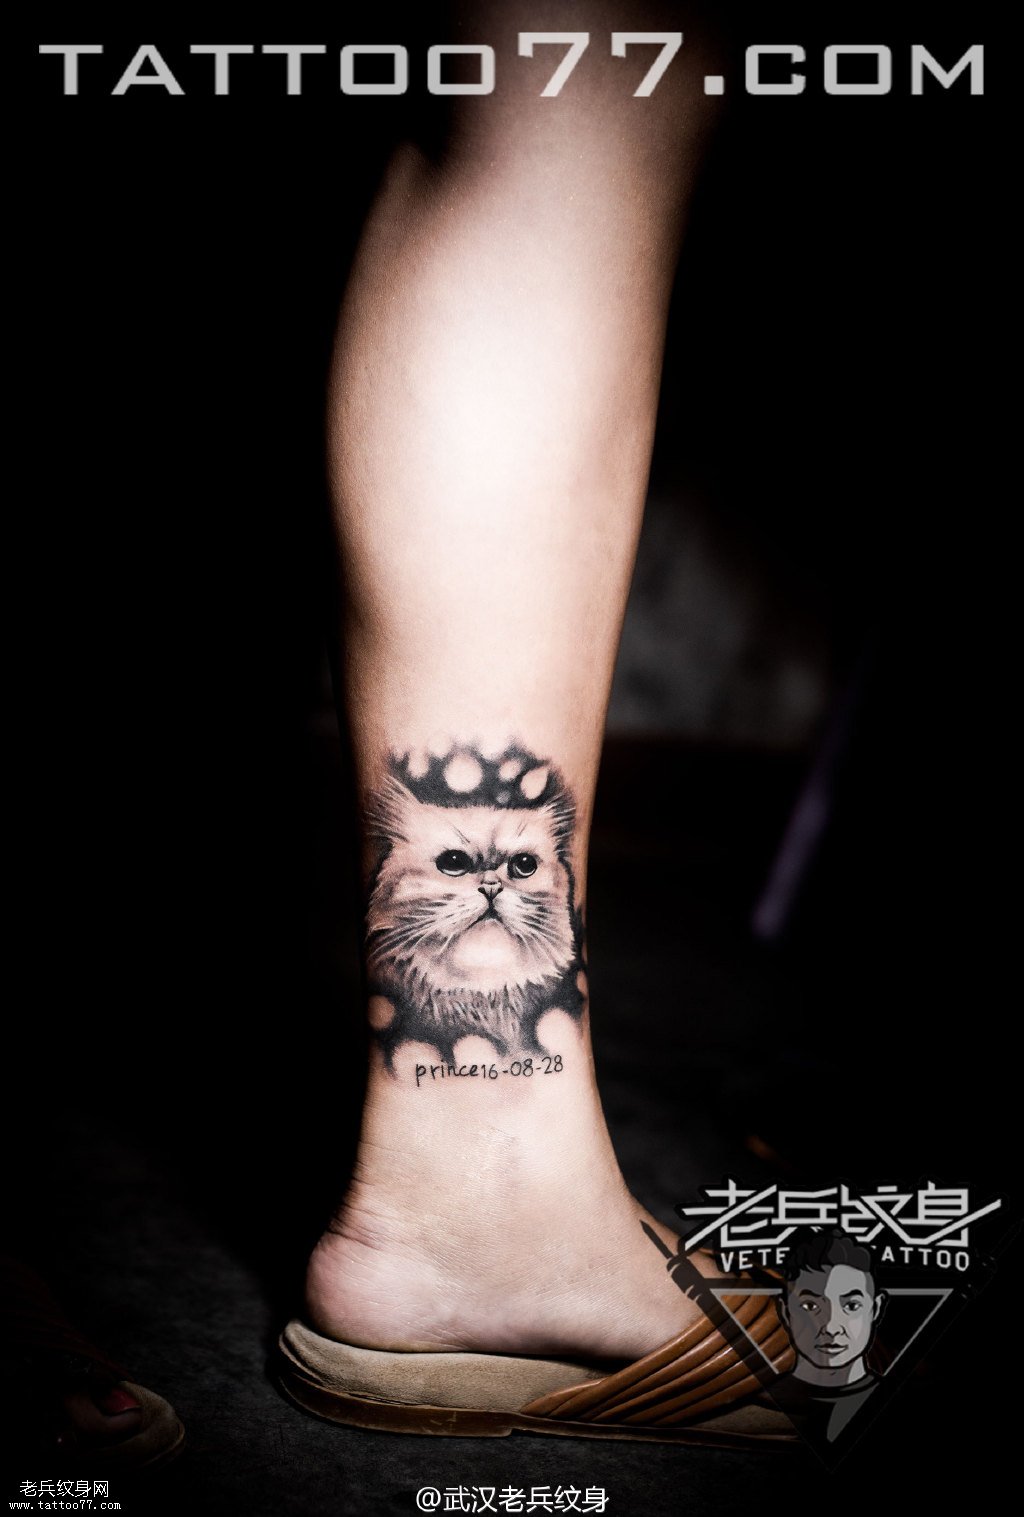 脚踝猫咪纹身图案作品